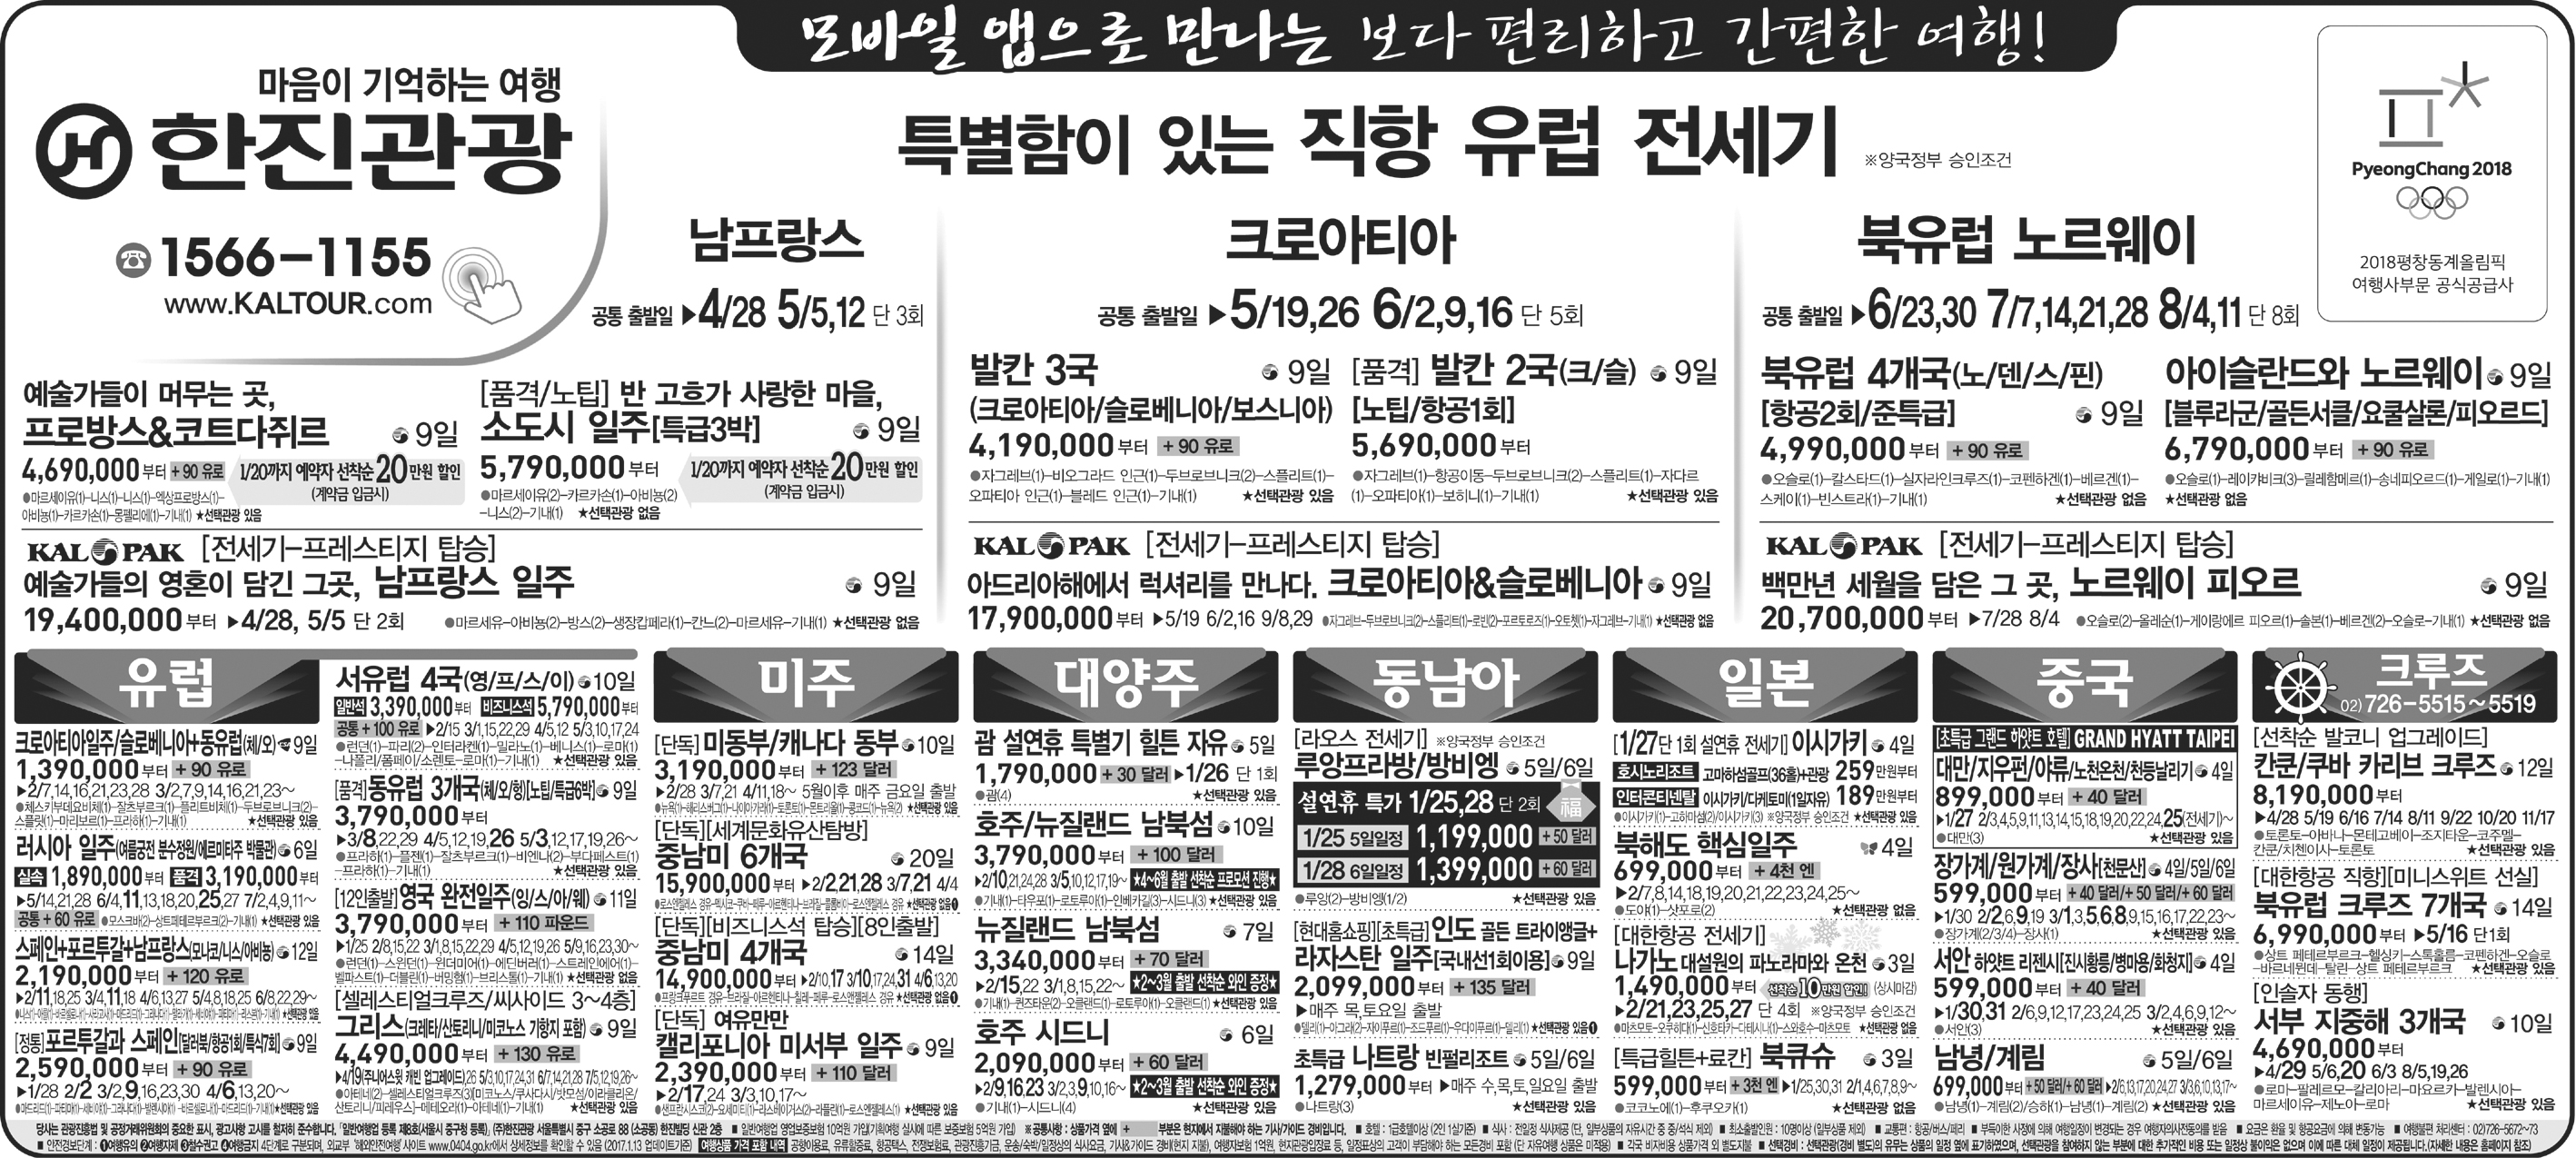 조선일보 [2017.01.16 월요일]